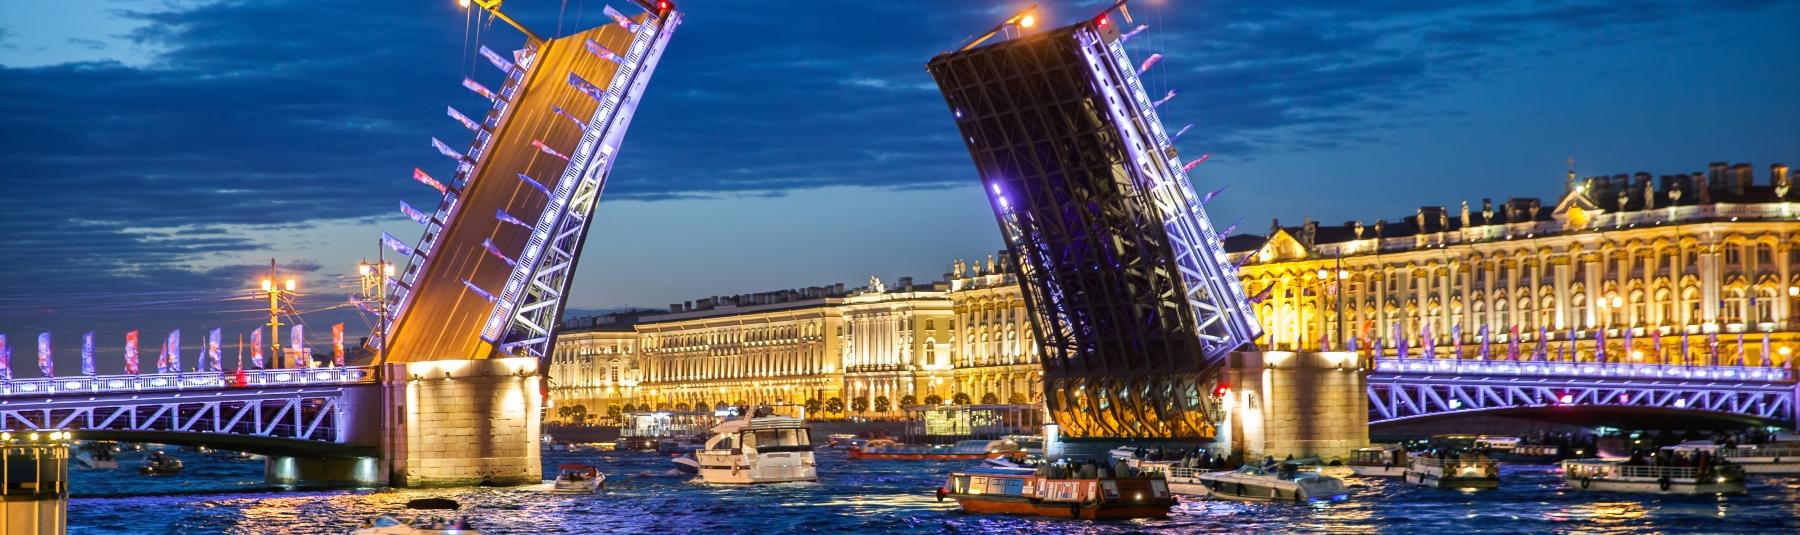 Ночные прогулки на теплоходе «Петербургские разводные мосты» со скидкой 56%